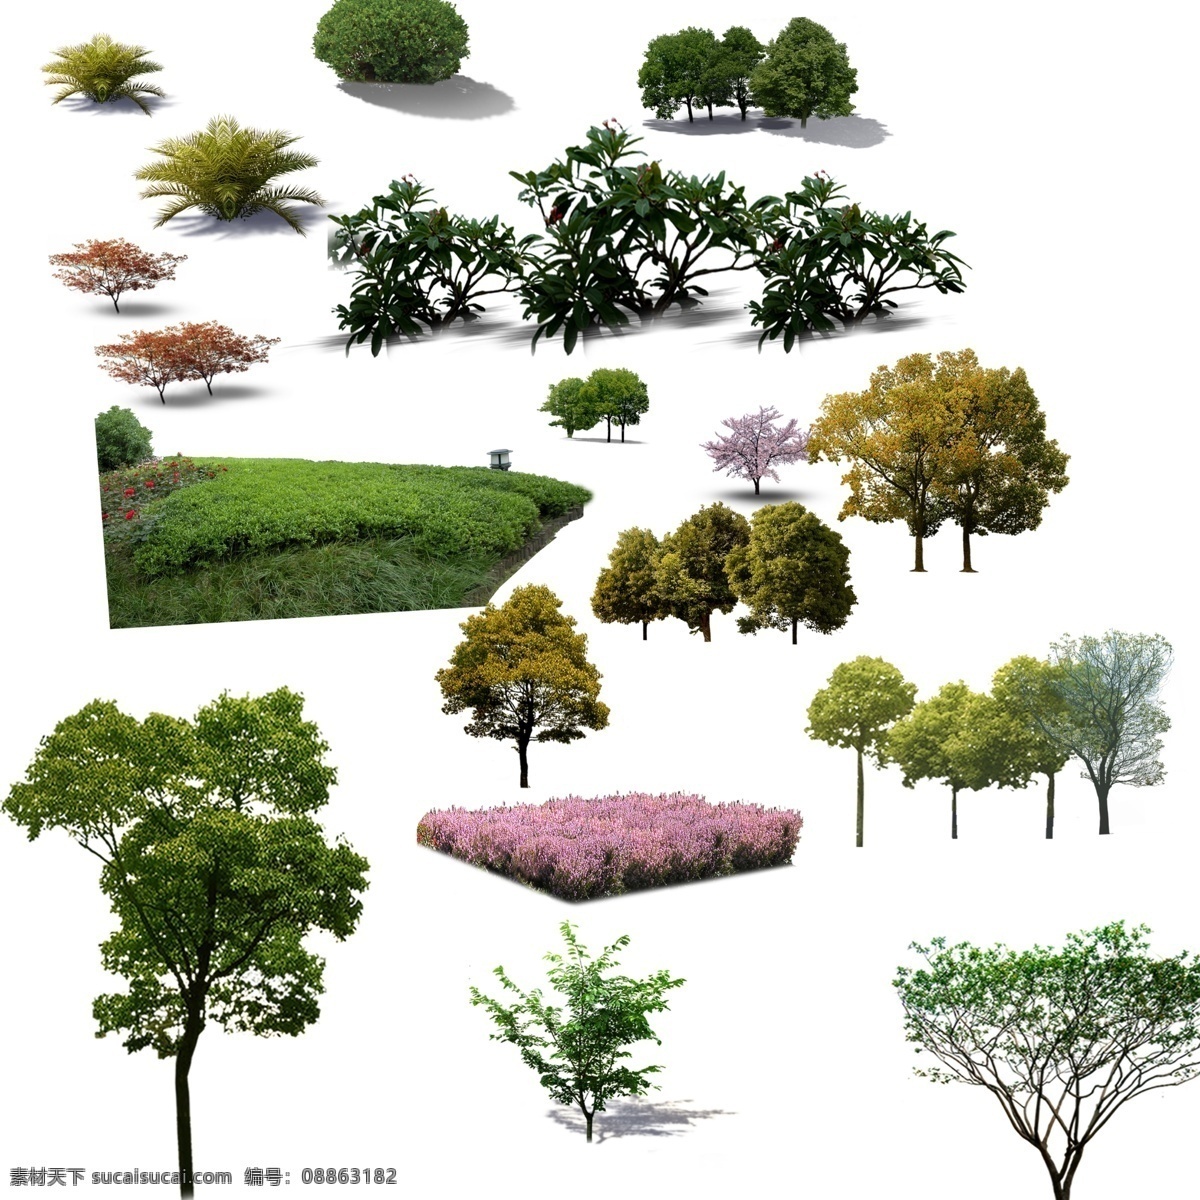 天朗 效果 植物 后期 园林 效果图 园林景观 景观设计 环境设计 源文件